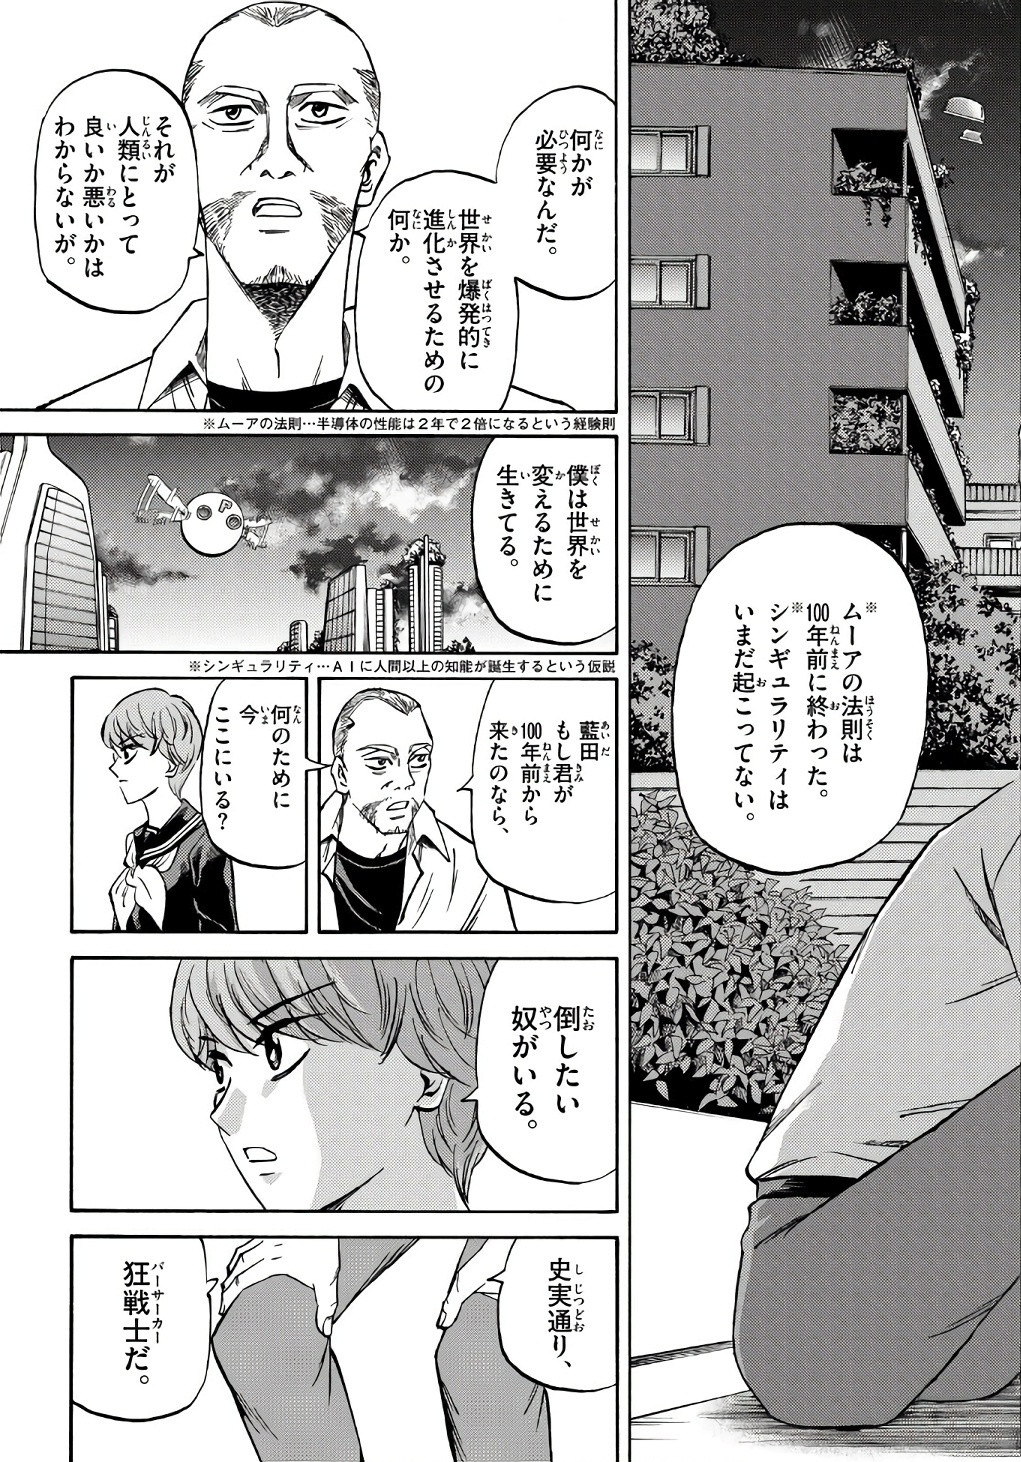 Ryu-to-Ichigo - Chapter 184 - Page 17